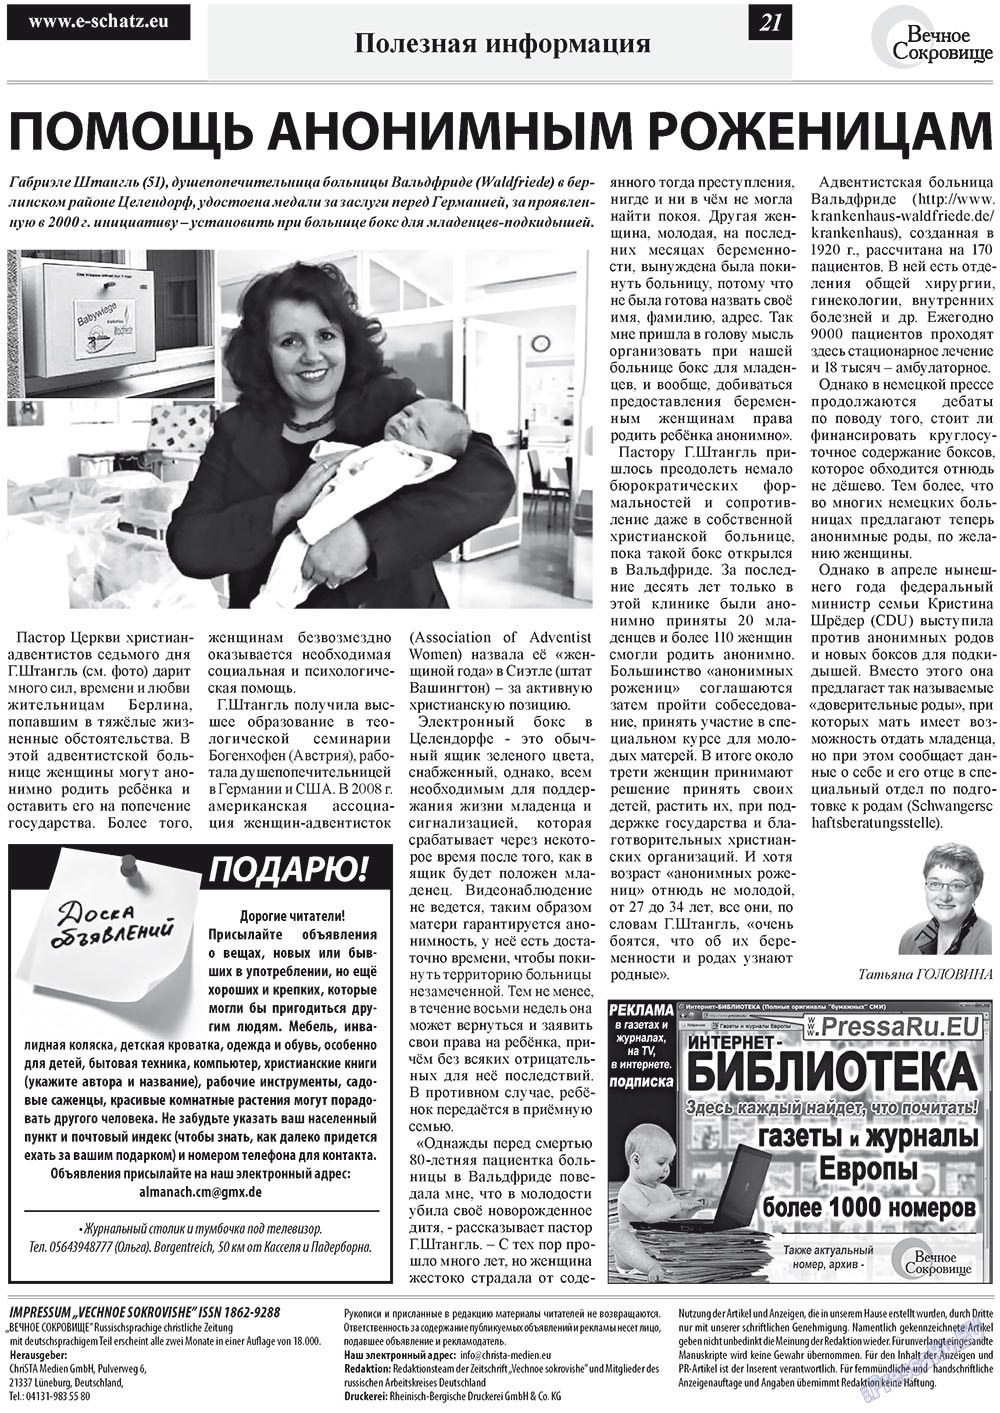 Вечное сокровище, газета. 2012 №4 стр.21